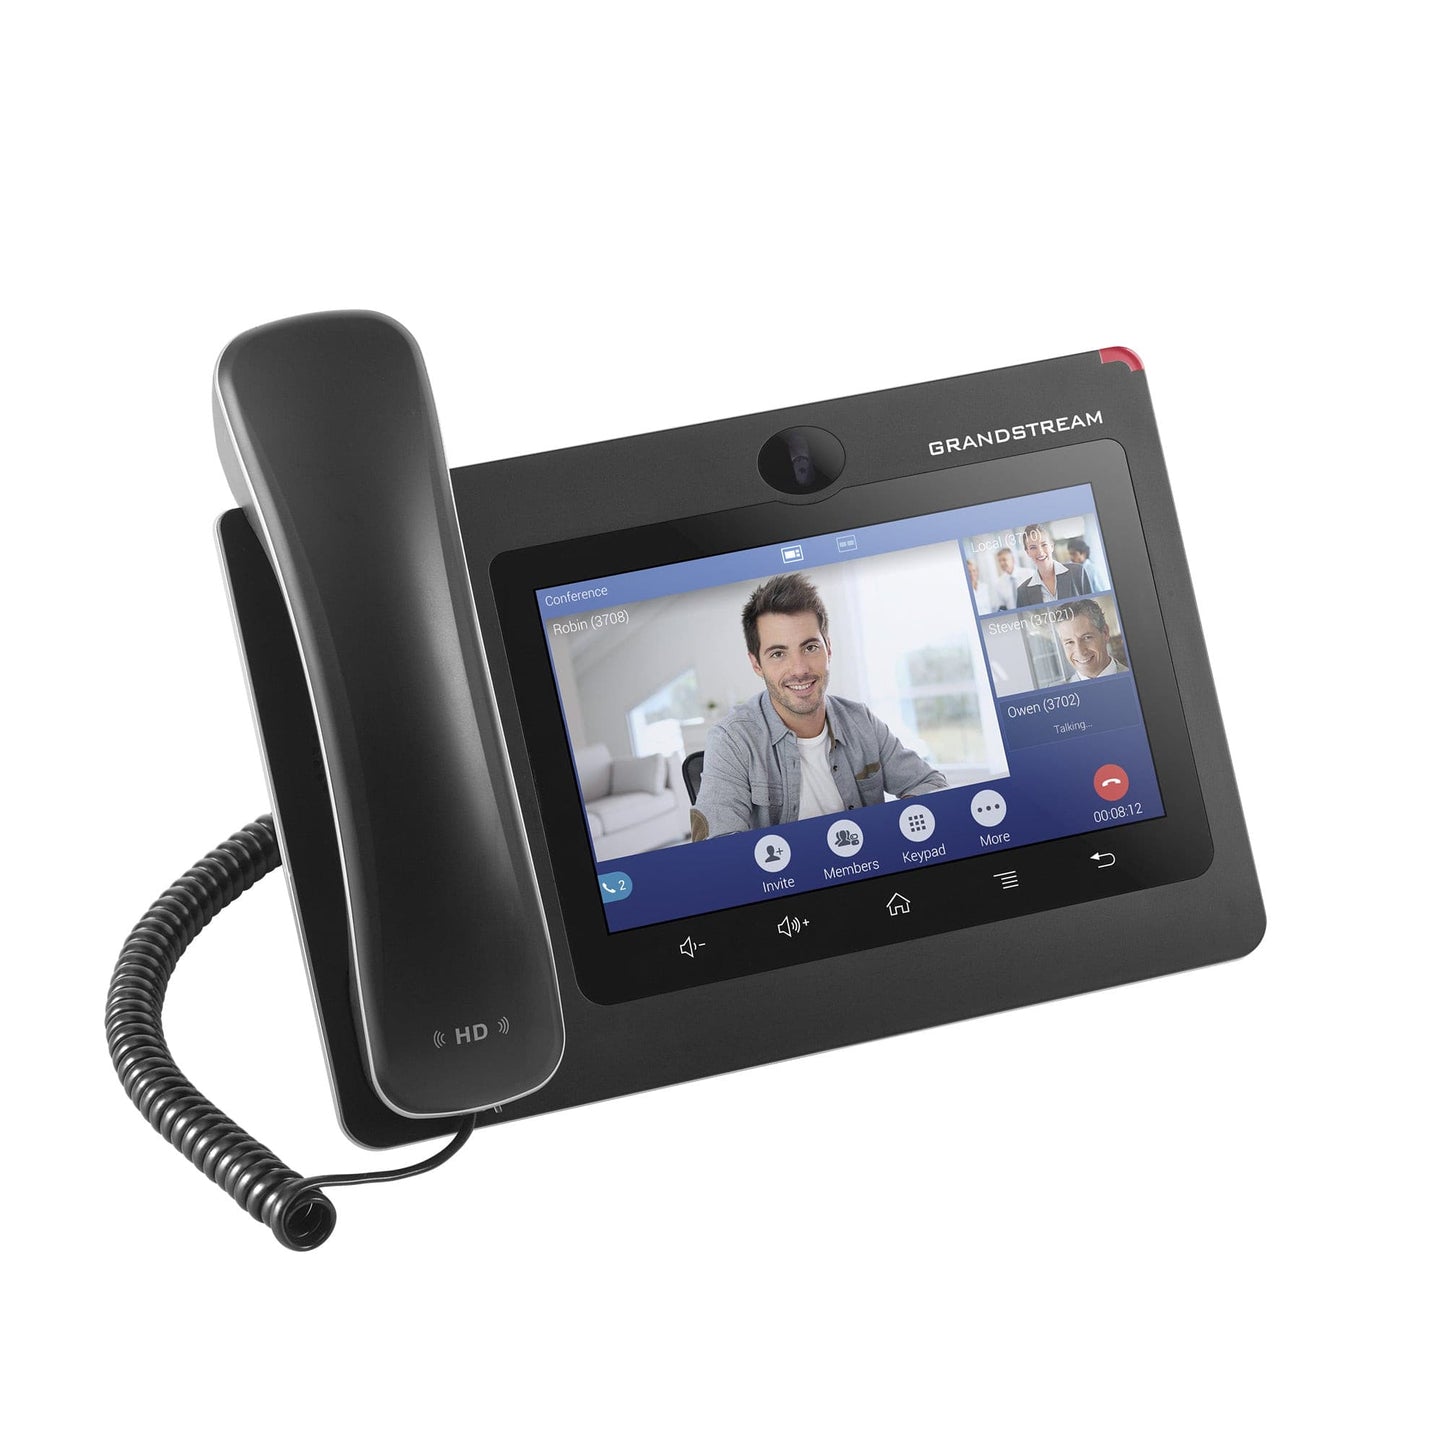 GXV3370 IP Video Phone - Premium  from Vanilla Telecoms Ltd. - Just €370.00! Shop now at Vanilla Telecoms Ltd.